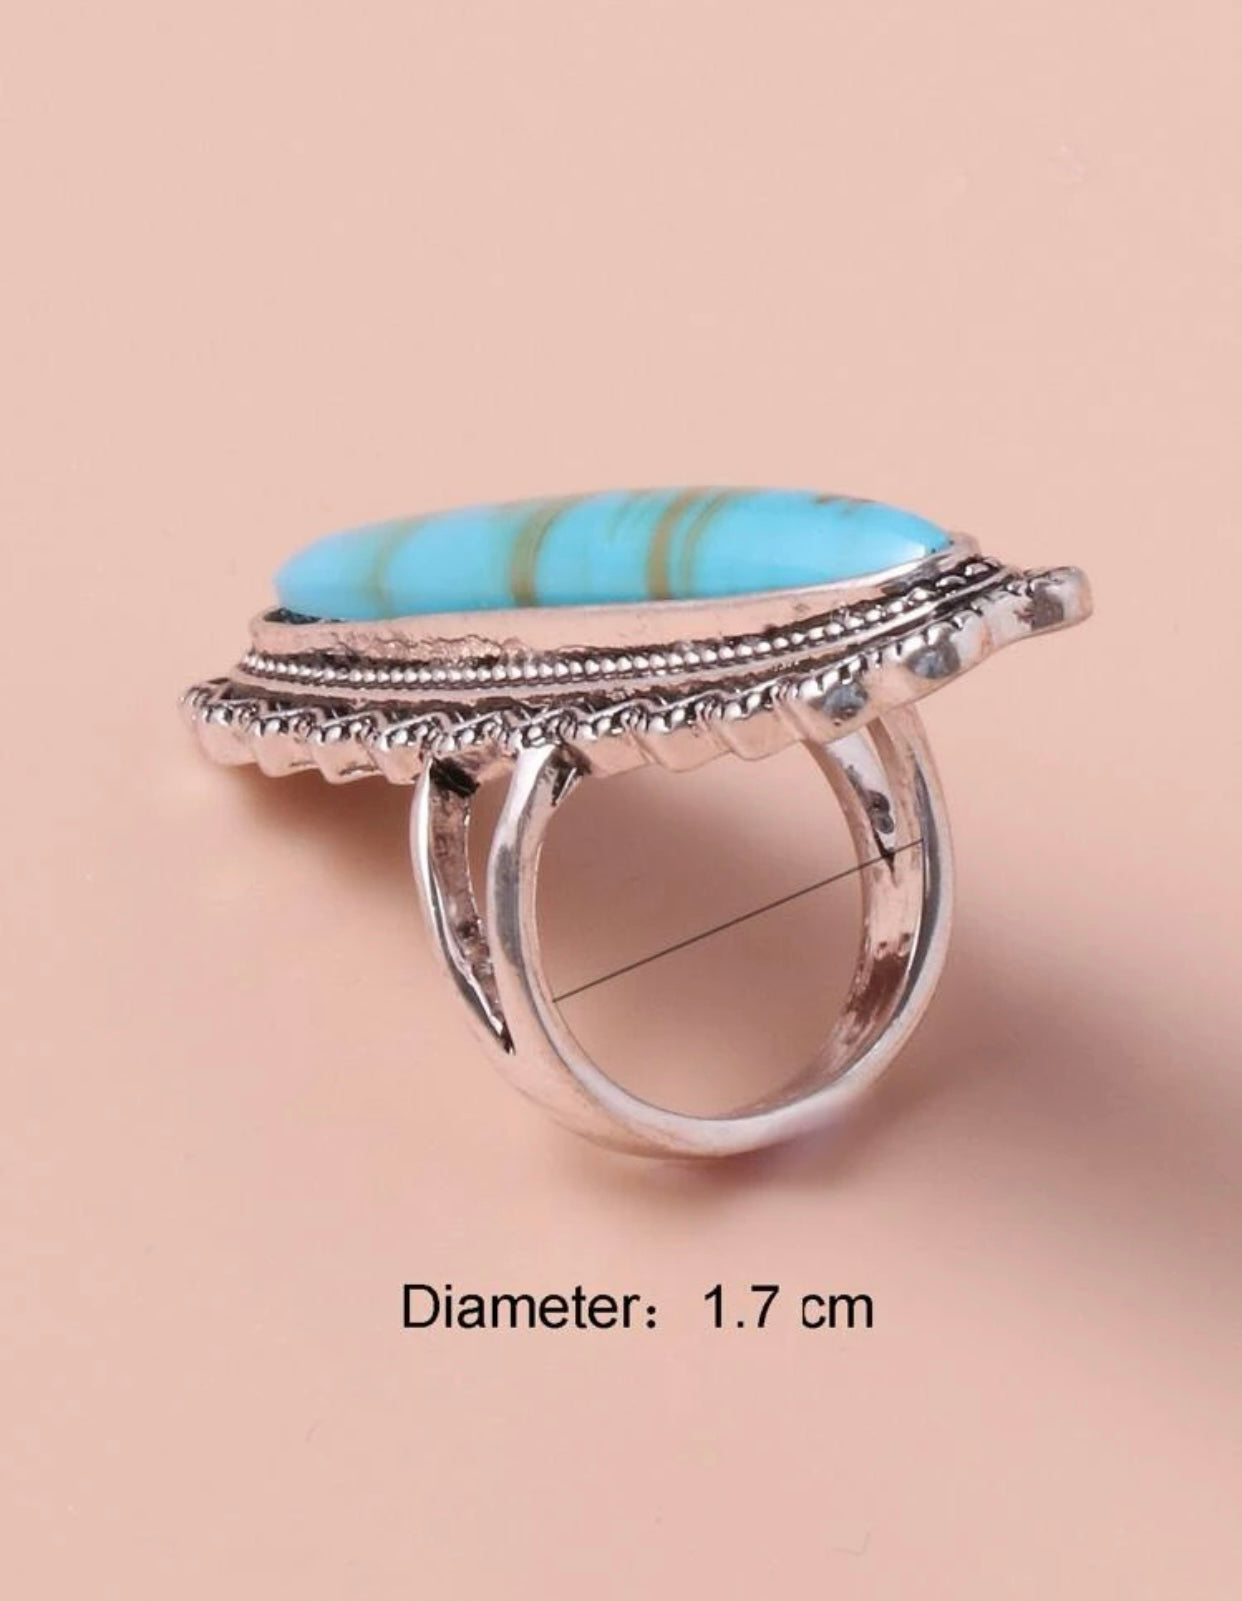 Turquoise Oversized Ring